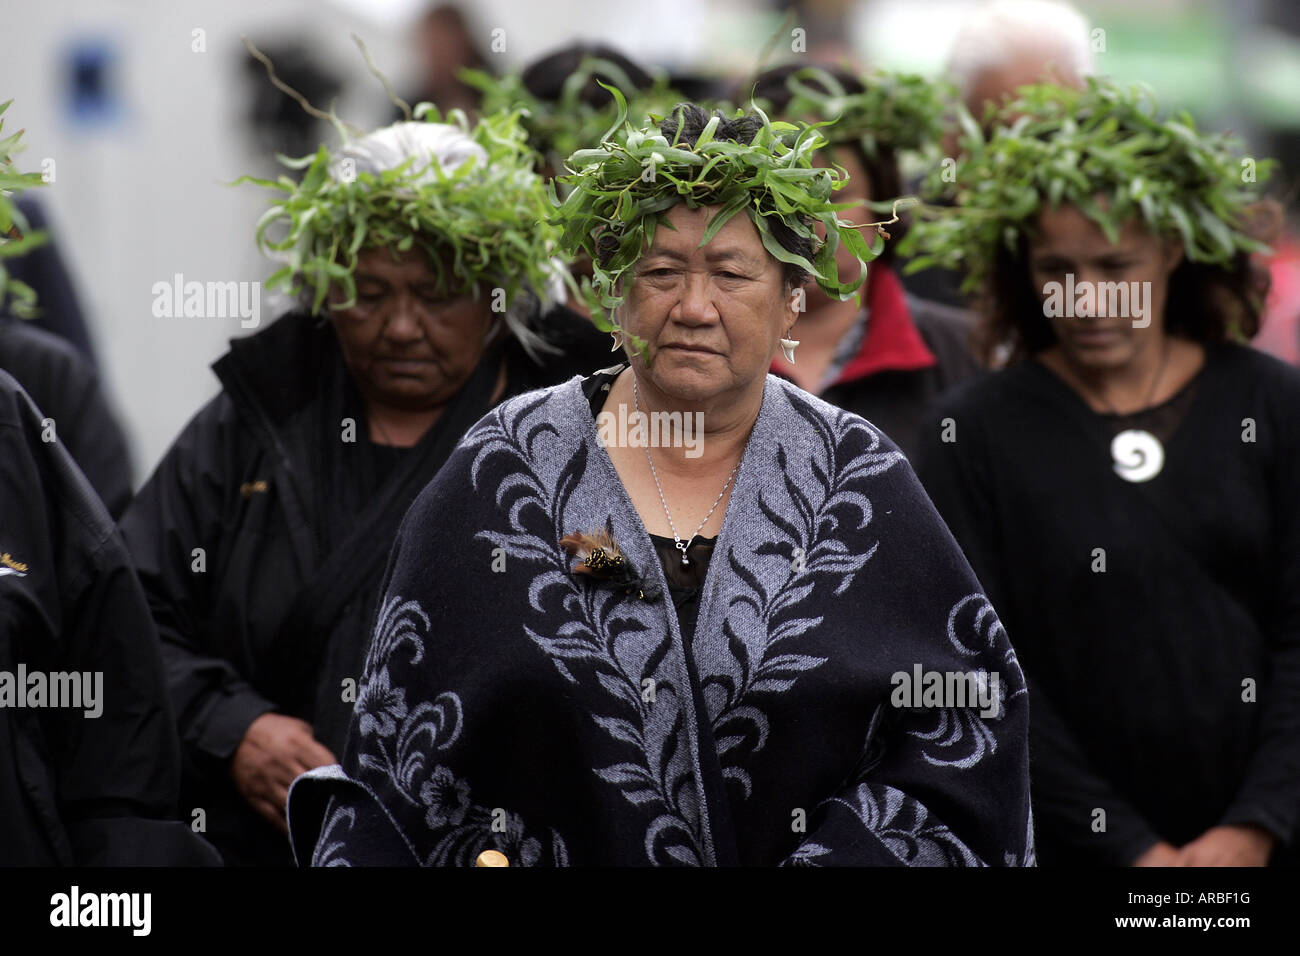 Sir Edmund Hillary, funérailles d'État à Auckland Nouvelle-Zélande Ngati Whatua maoris arrivent pour accueillir le cercueil Banque D'Images